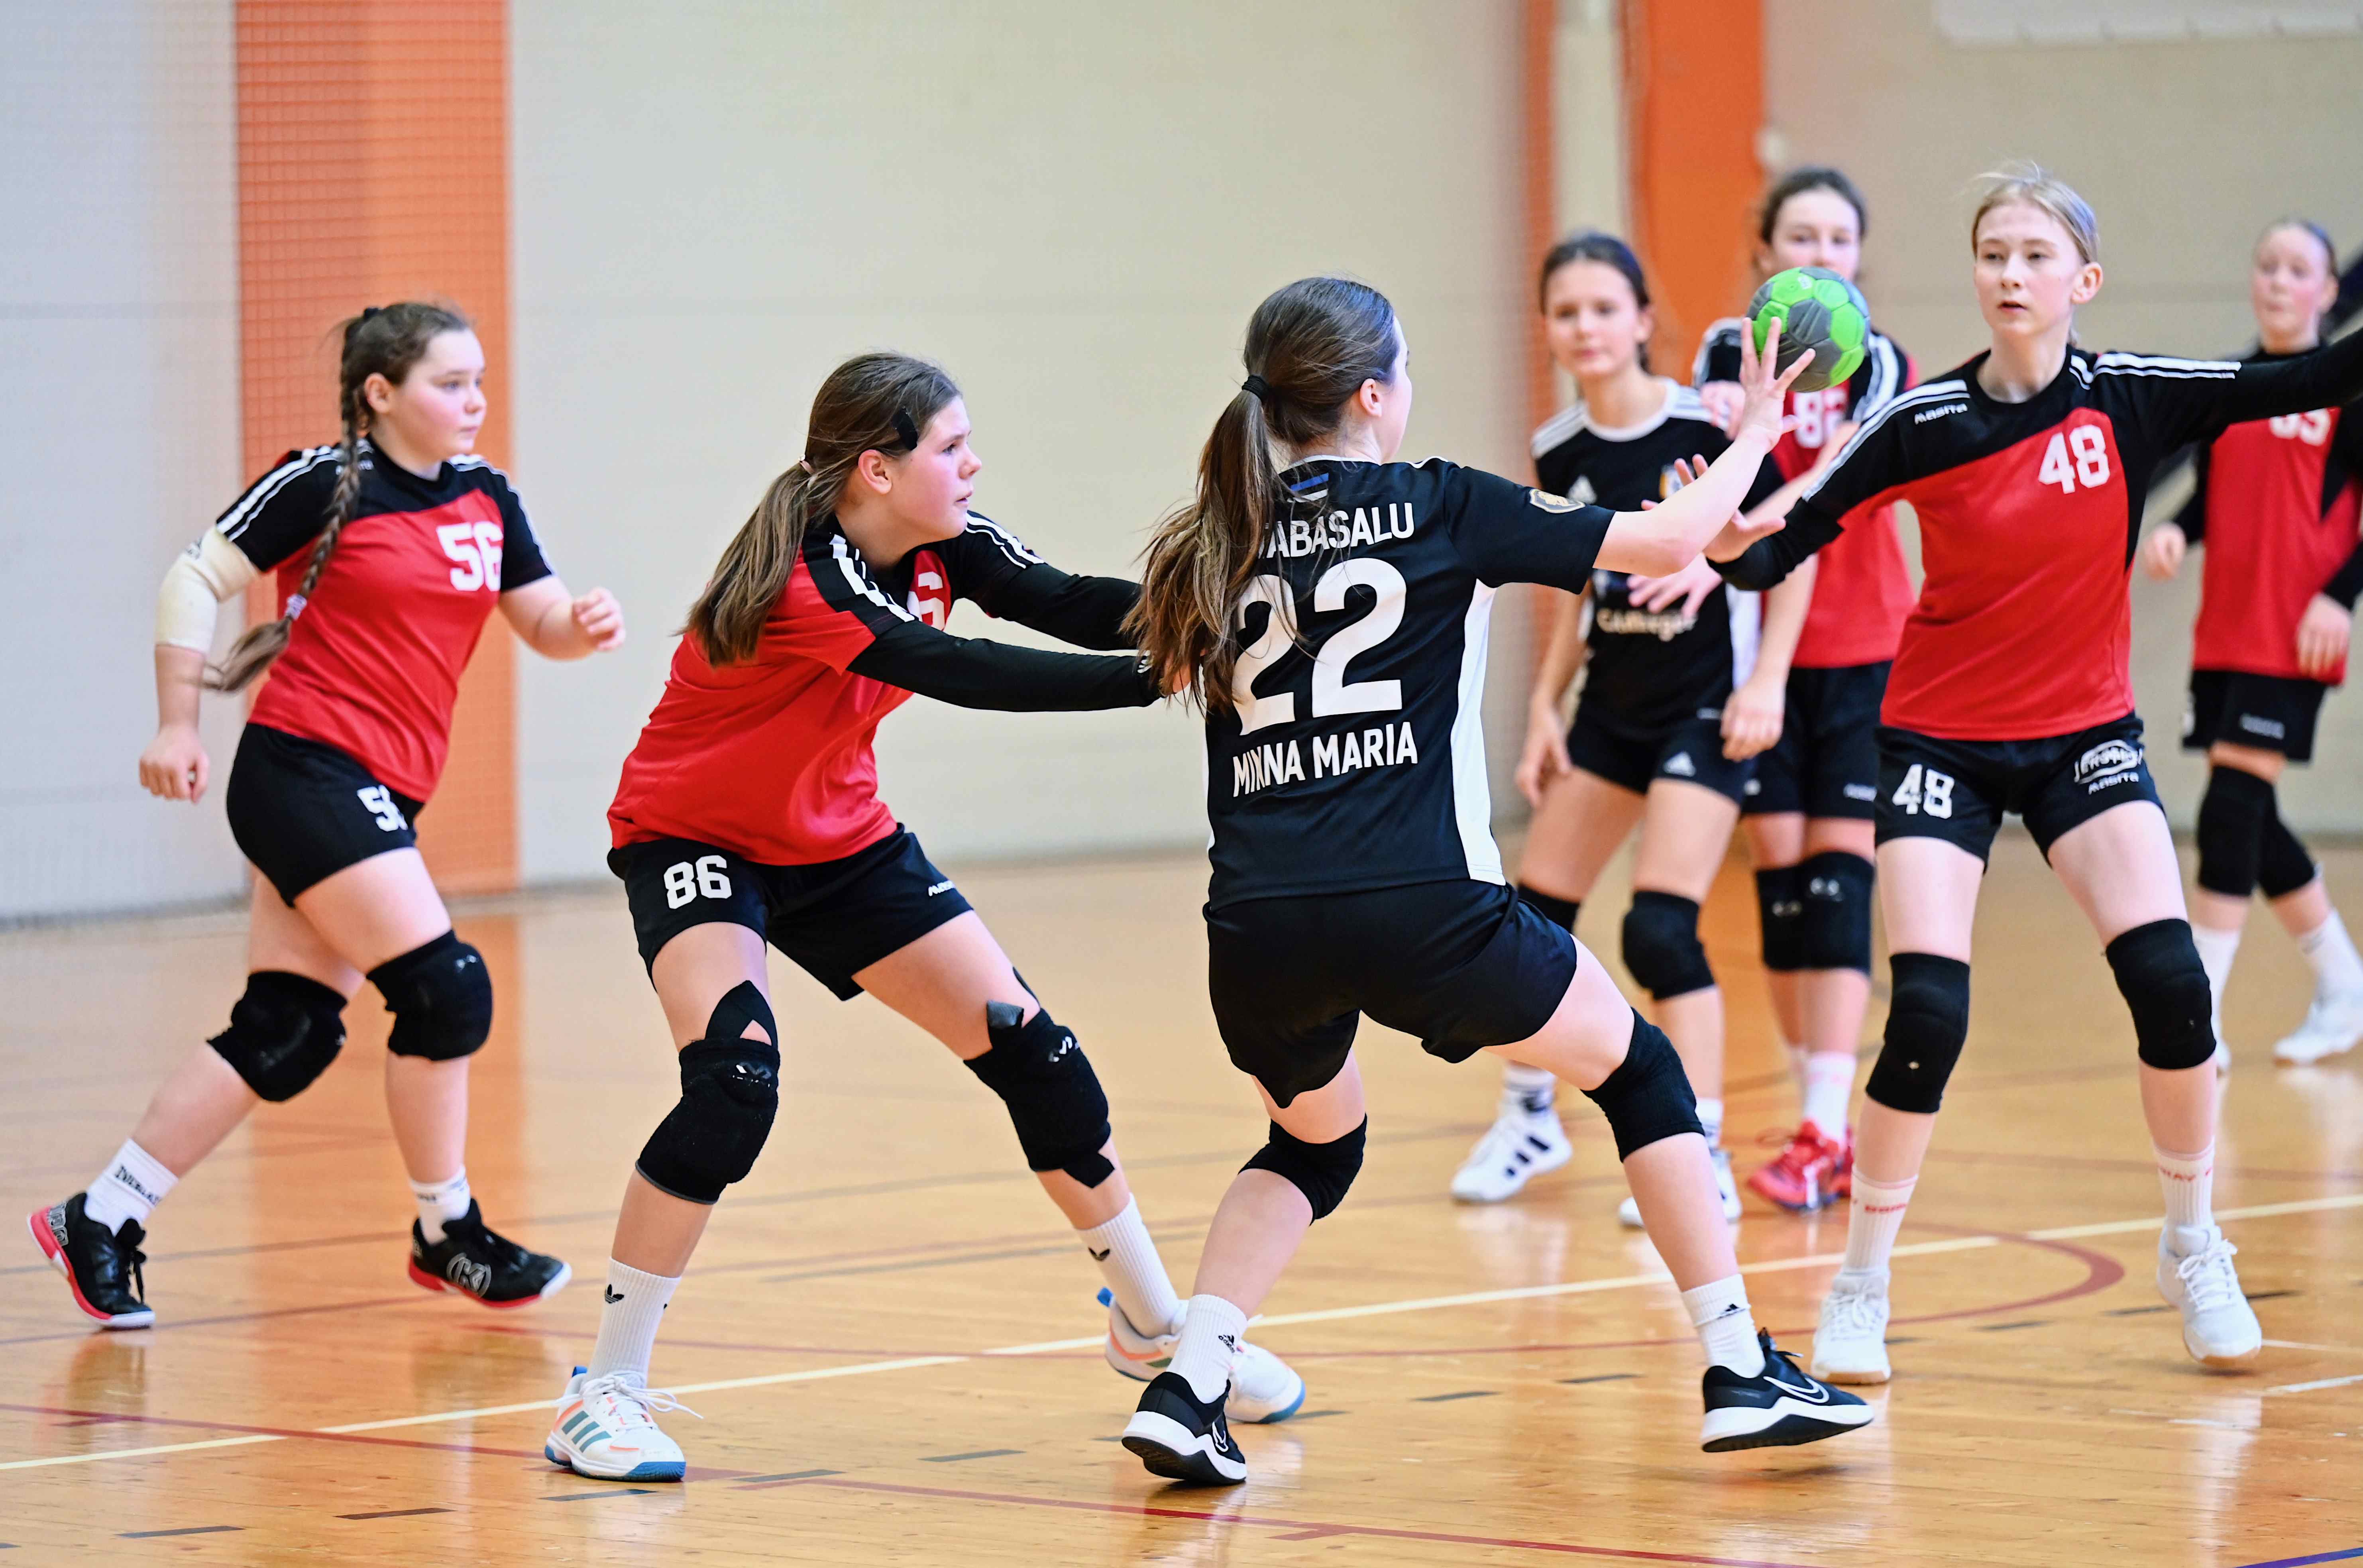 Tütarlaste D vanuseklassi 2024 Eesti meistrivõistlustel käsipallis on jäänud mängida veel viimane võistluspäev